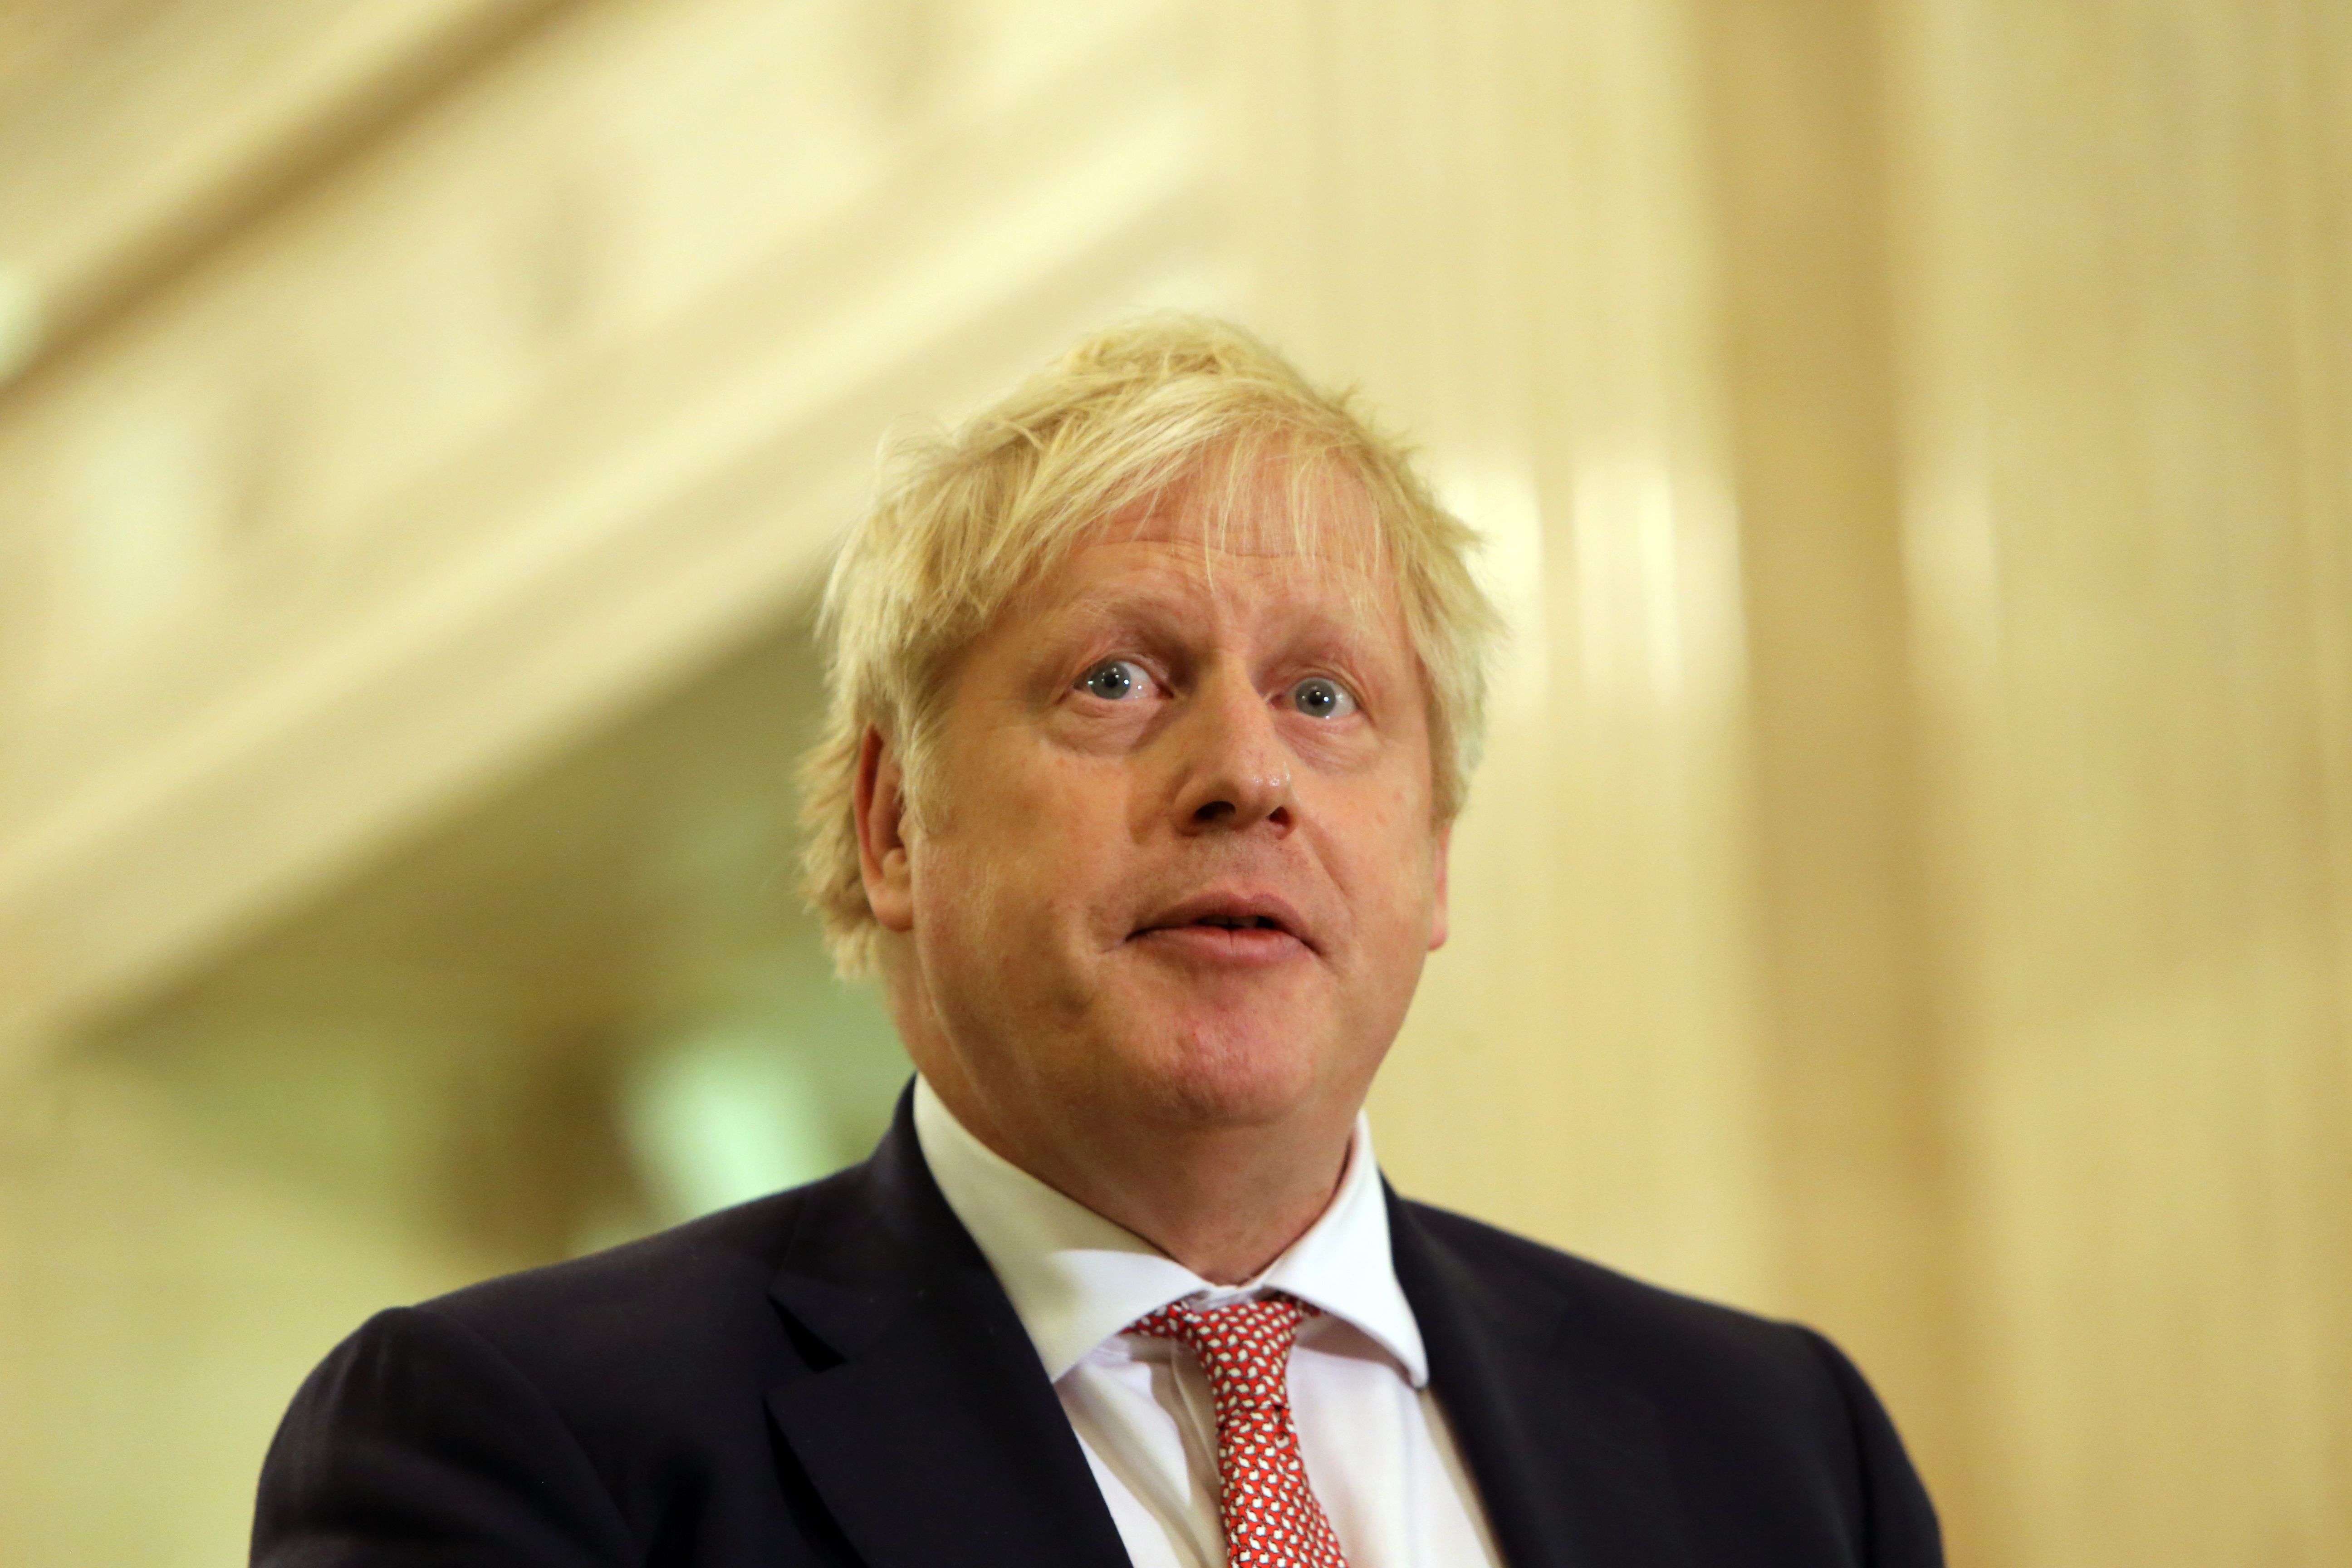 INQUIRY: British Prime Minister Boris Johnson is under intense pressure